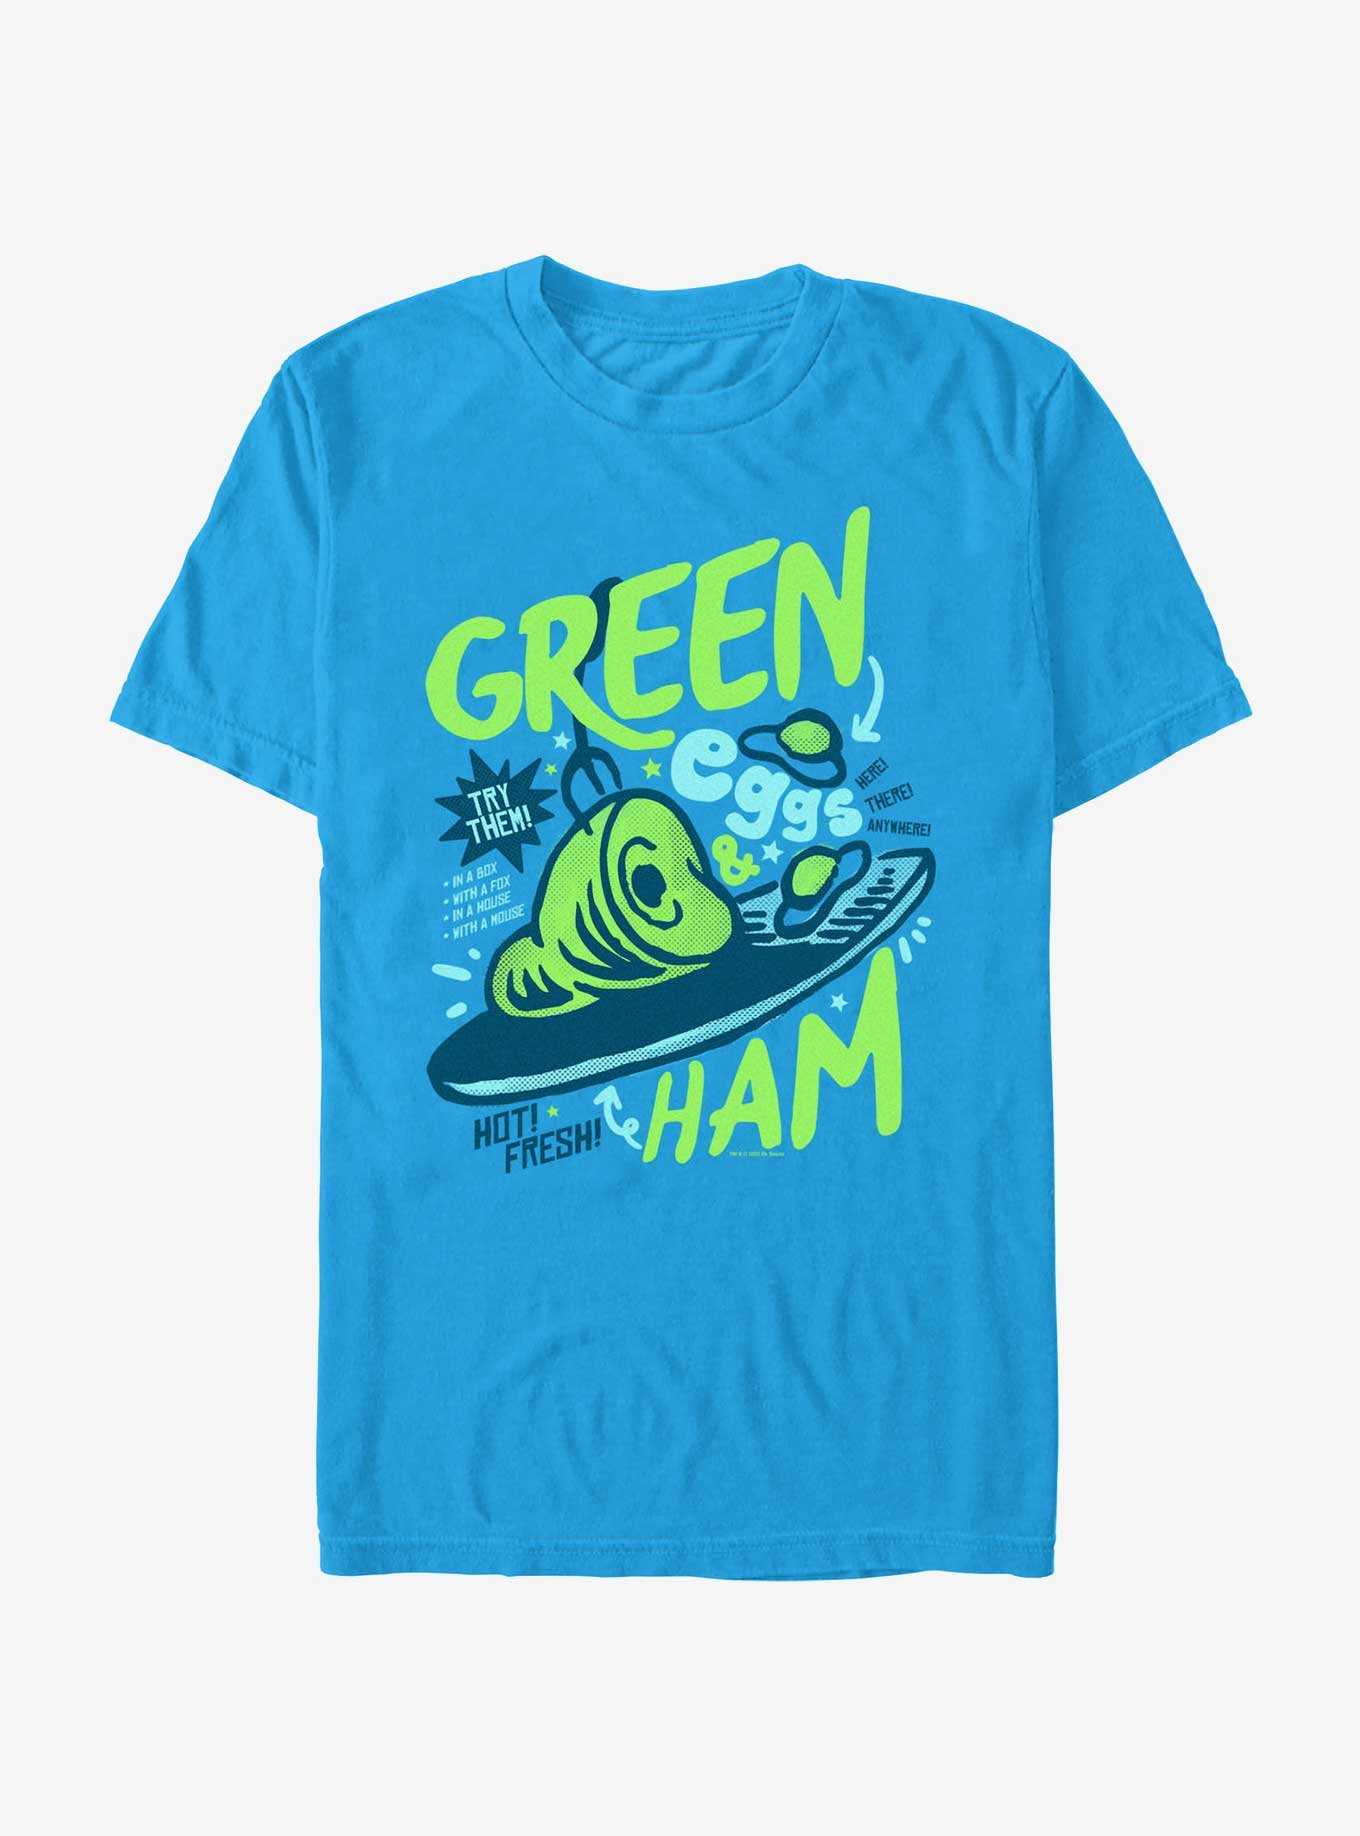 Dr. Seuss Green Eggs & Ham T-Shirt, , hi-res